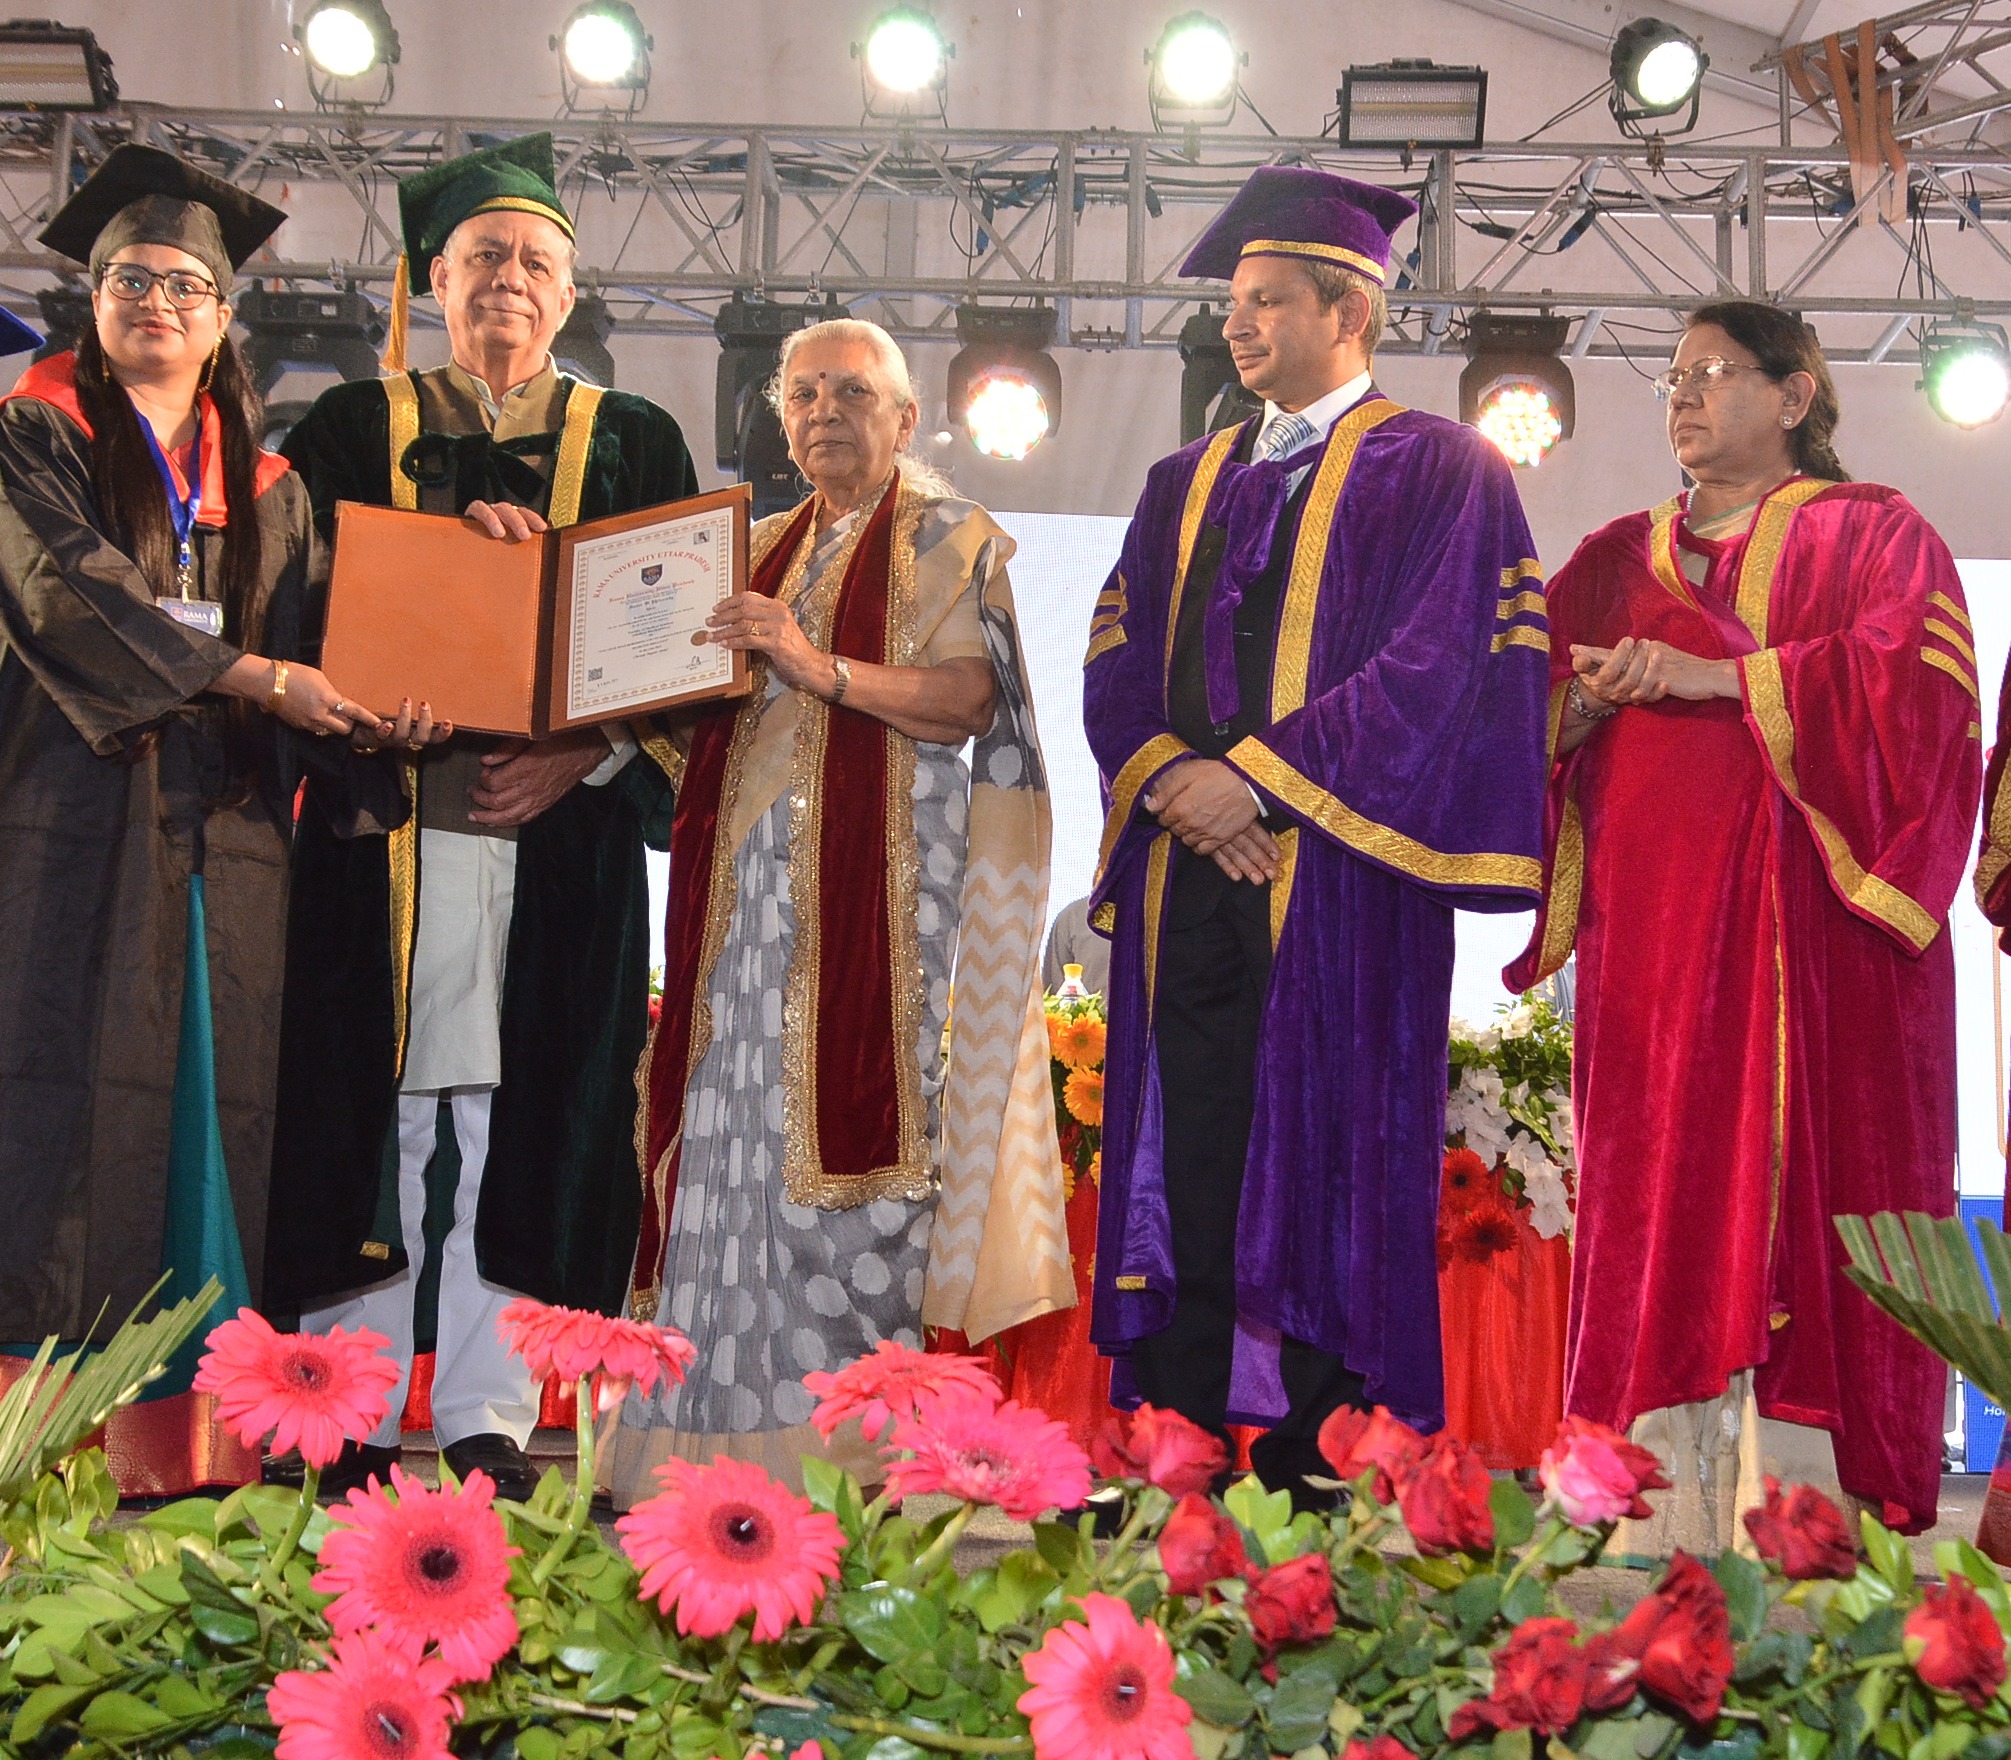 राज्यपाल की अध्यक्षता में रामा विश्वविद्यालय, कानपुर का द्वितीय दीक्षान्त समारोह सम्पन्न